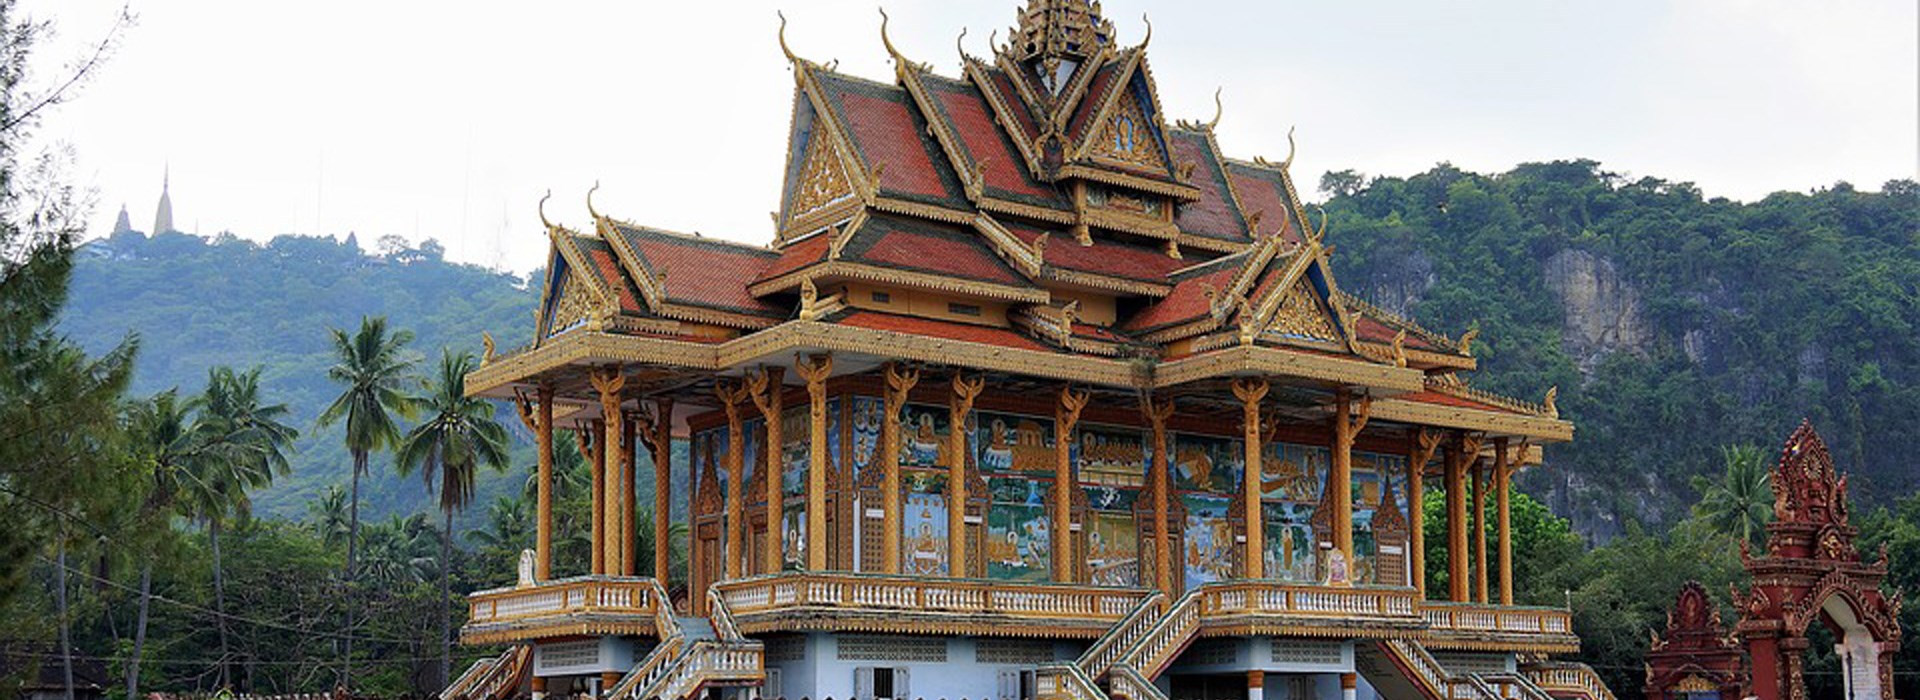 Visiter Battambang - Cambodge